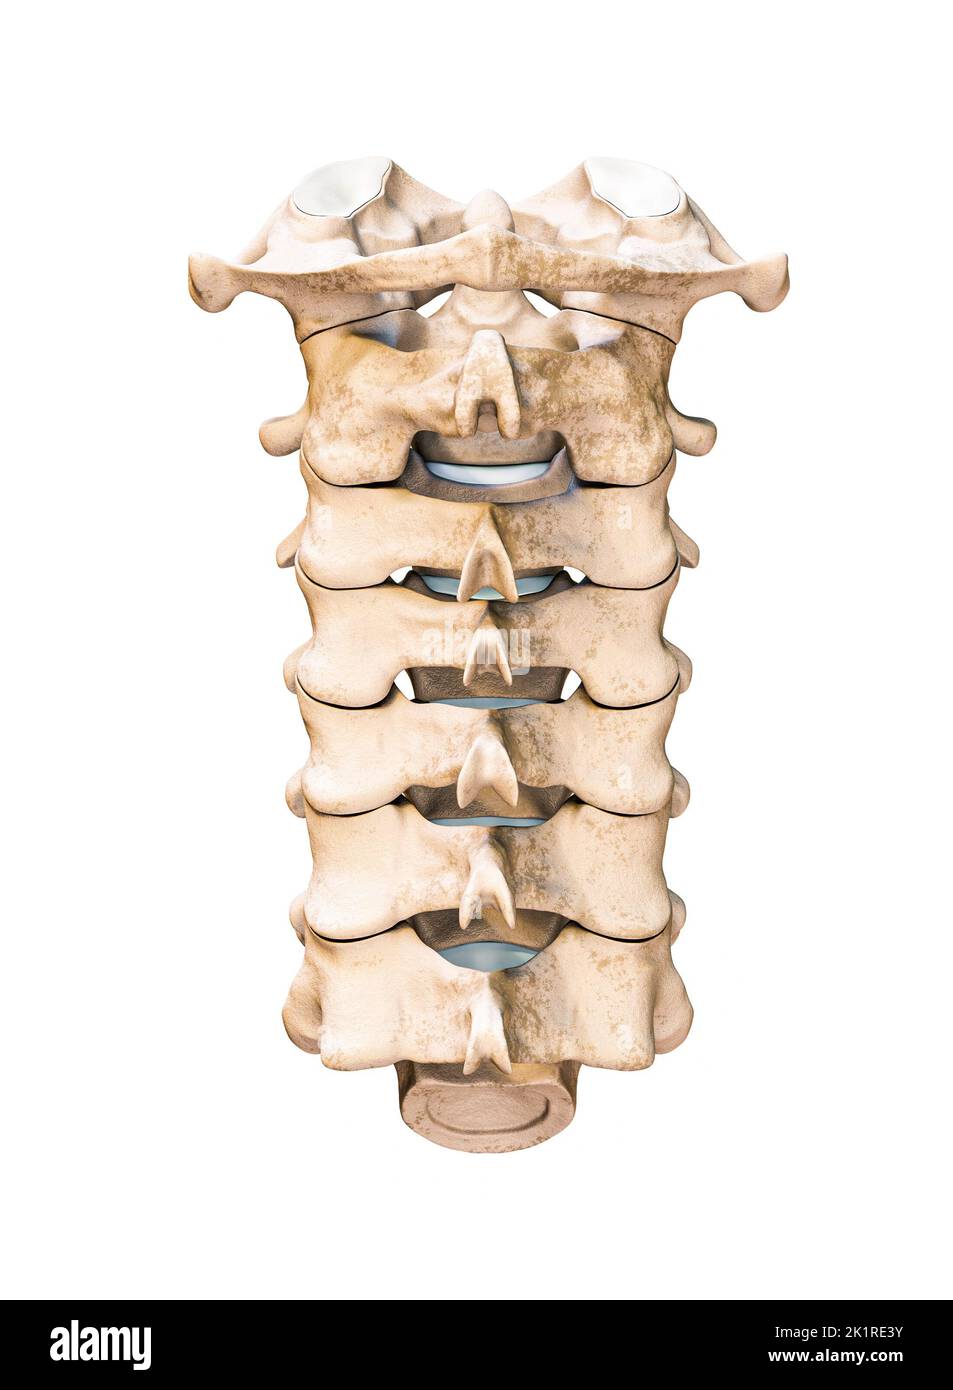 Hintere oder hintere Ansicht der sieben menschlichen Halswirbel, isoliert auf weißem Hintergrund, 3D Darstellung. Anatomie, Osteologie, leer Stockfoto